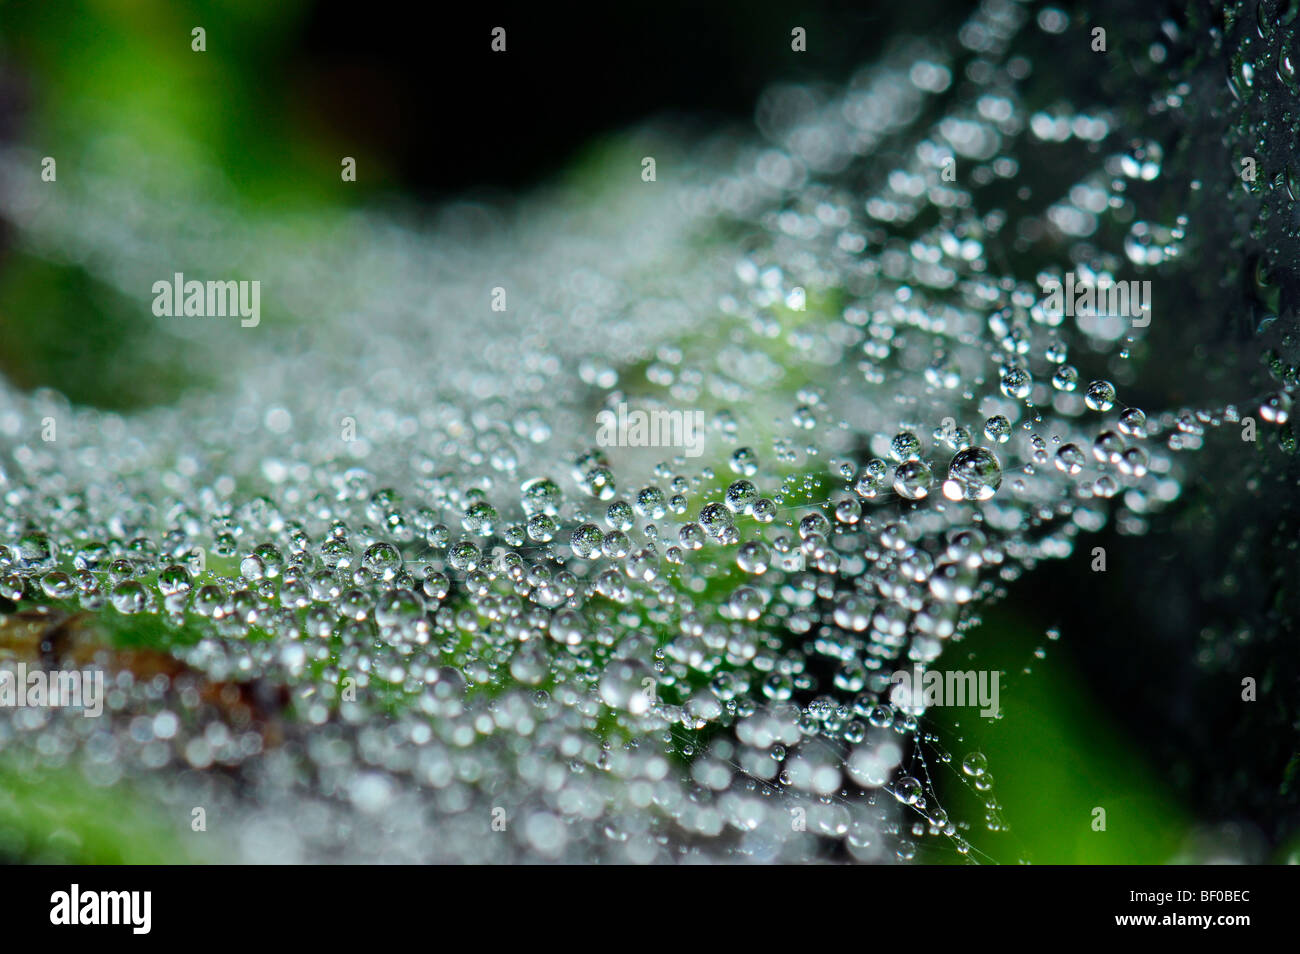 L'eau de condensation condenser rosée goutte perl sur spider web s/n'araignee araignée libre frais nature paysage eau pure humide vert pu Banque D'Images